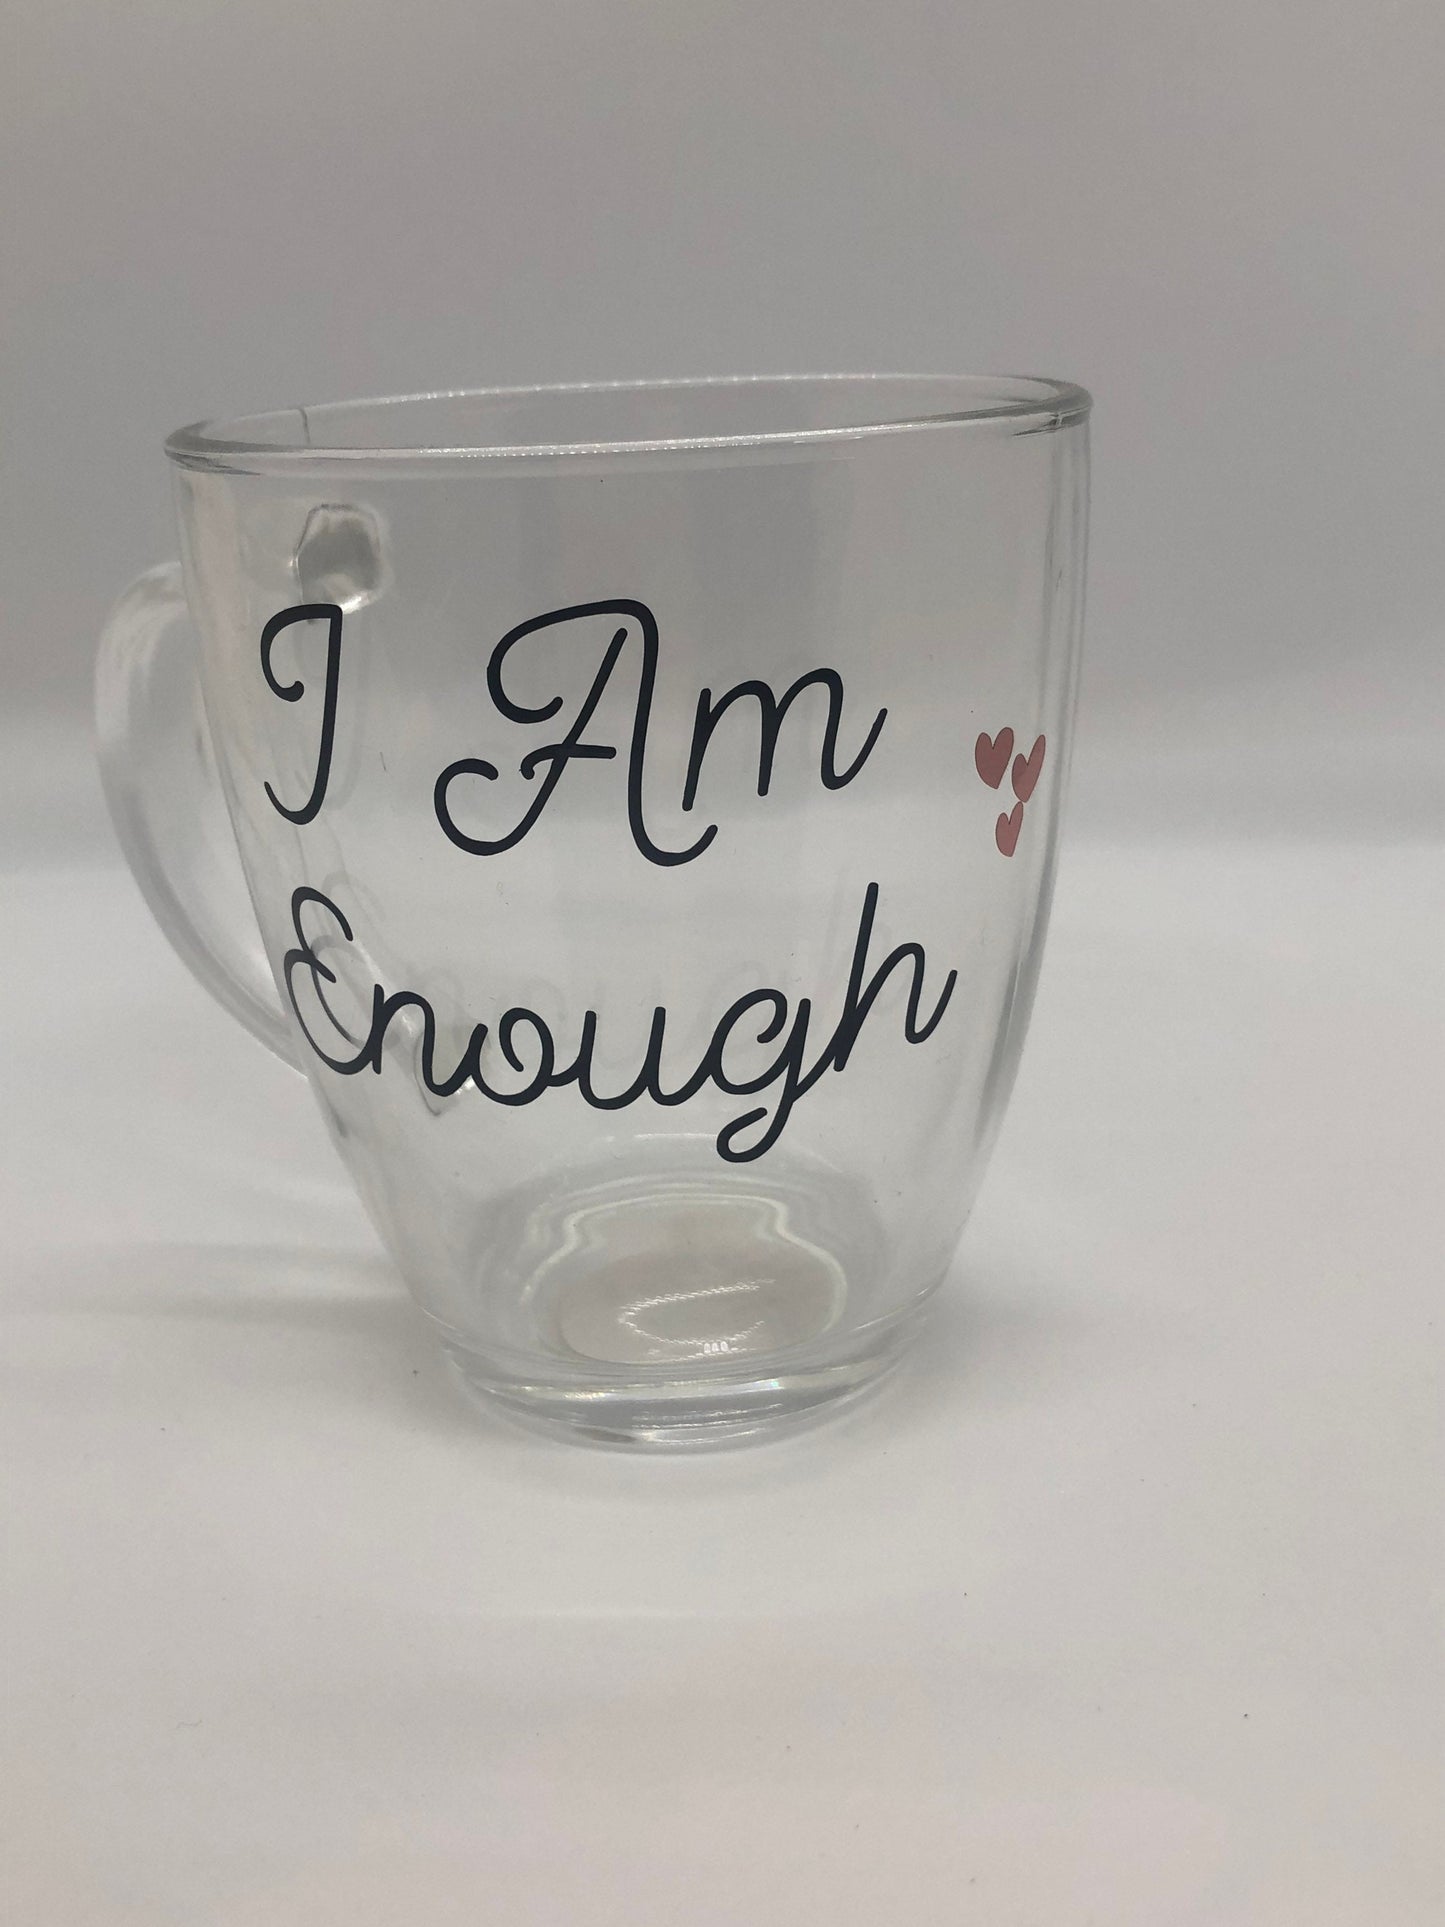 Self love in a mug